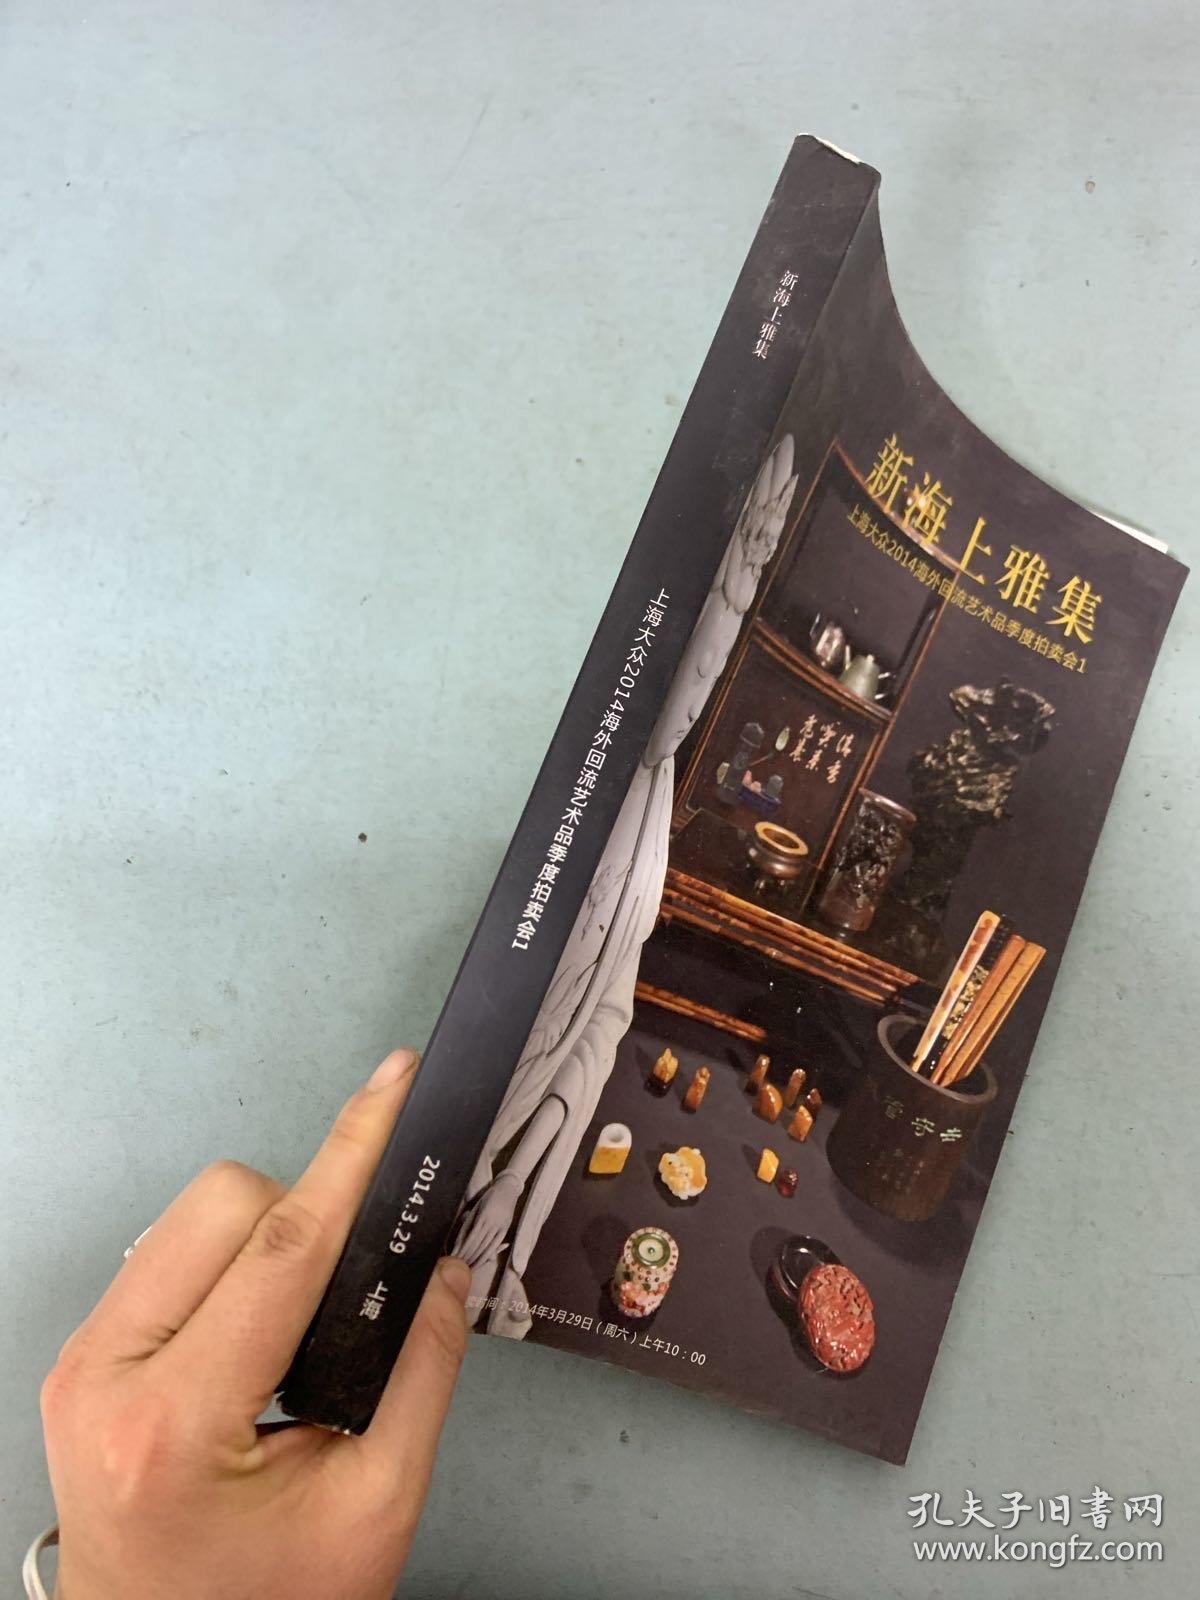 上海大众2014年海外回流艺术品季度拍卖会1  新海上雅集 2014.3.29杂志